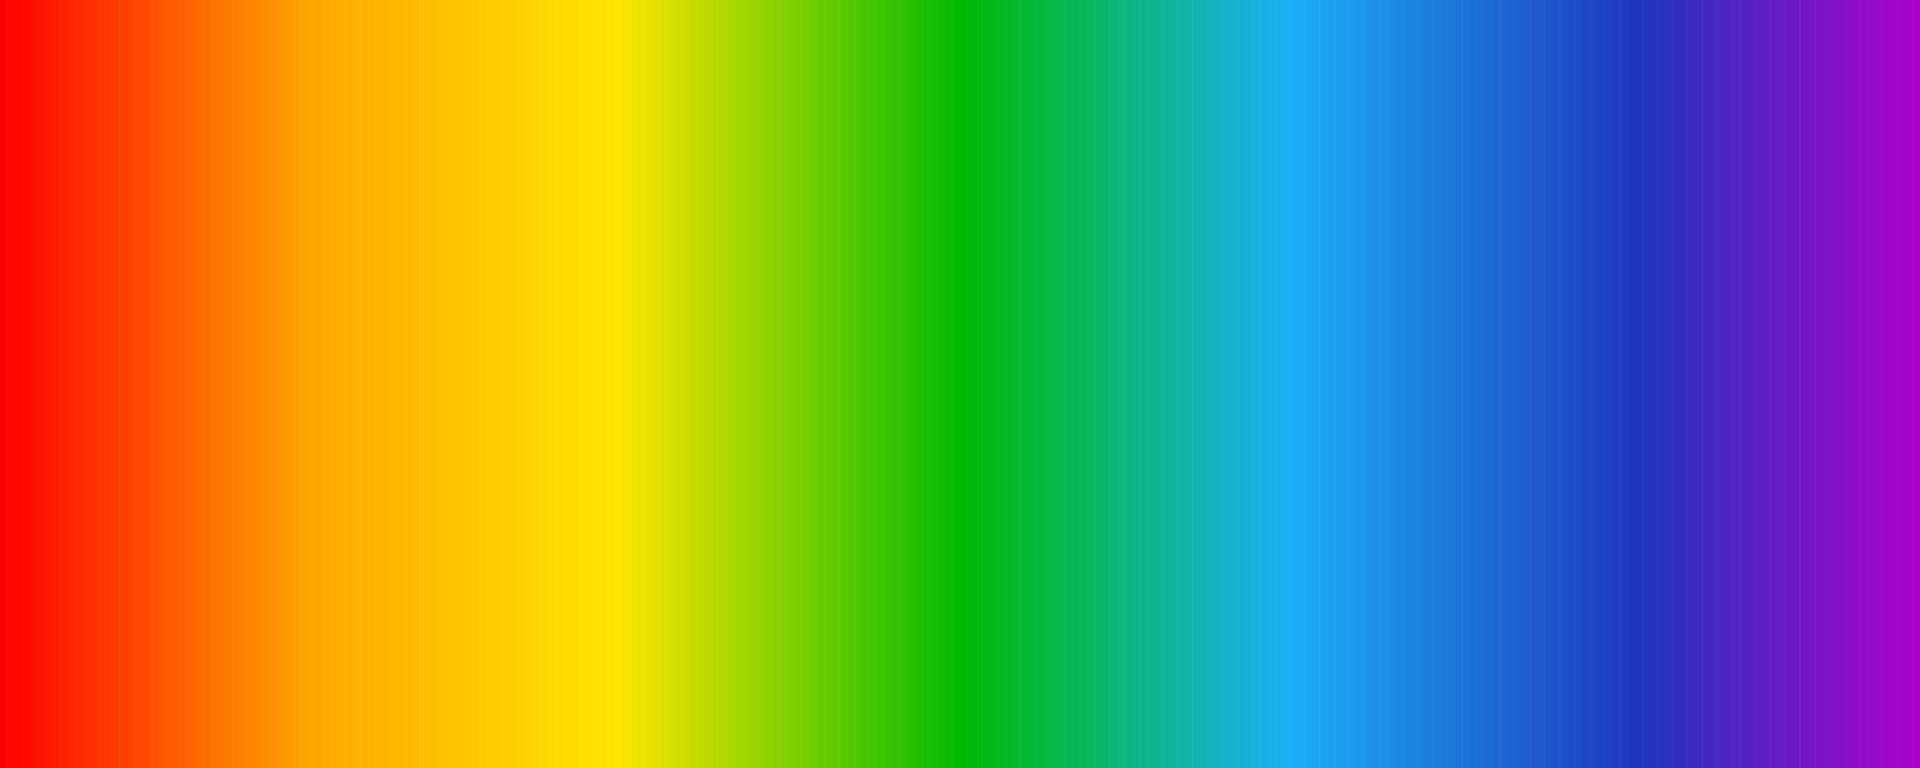 spectre lumineux optique. fond dégradé arc-en-ciel. spectre de couleurs visible électromagnétique pour l'œil humain. jeu de couleurs de l'infrarouge à l'ultraviolet. illustration vectorielle vecteur